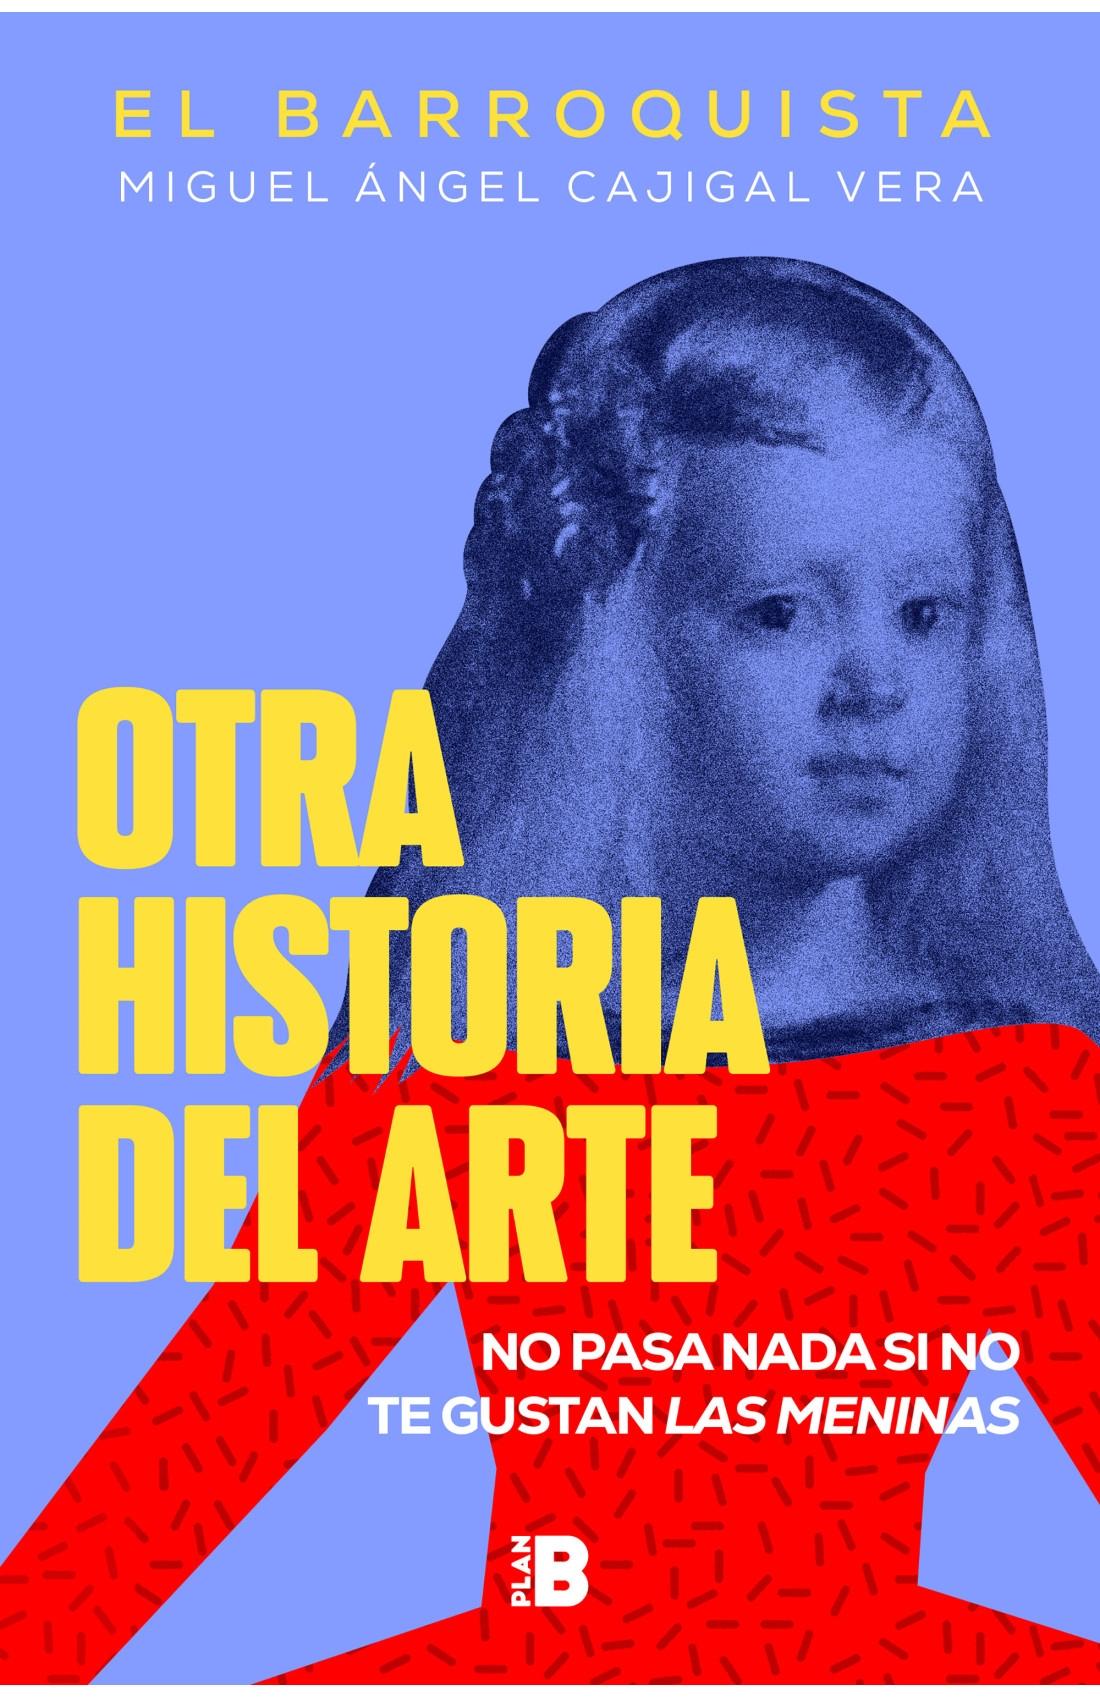 OTRA HISTORIA DEL ARTE "NO PASA NADA SI NO TE GUSTAN LAS MENINAS"